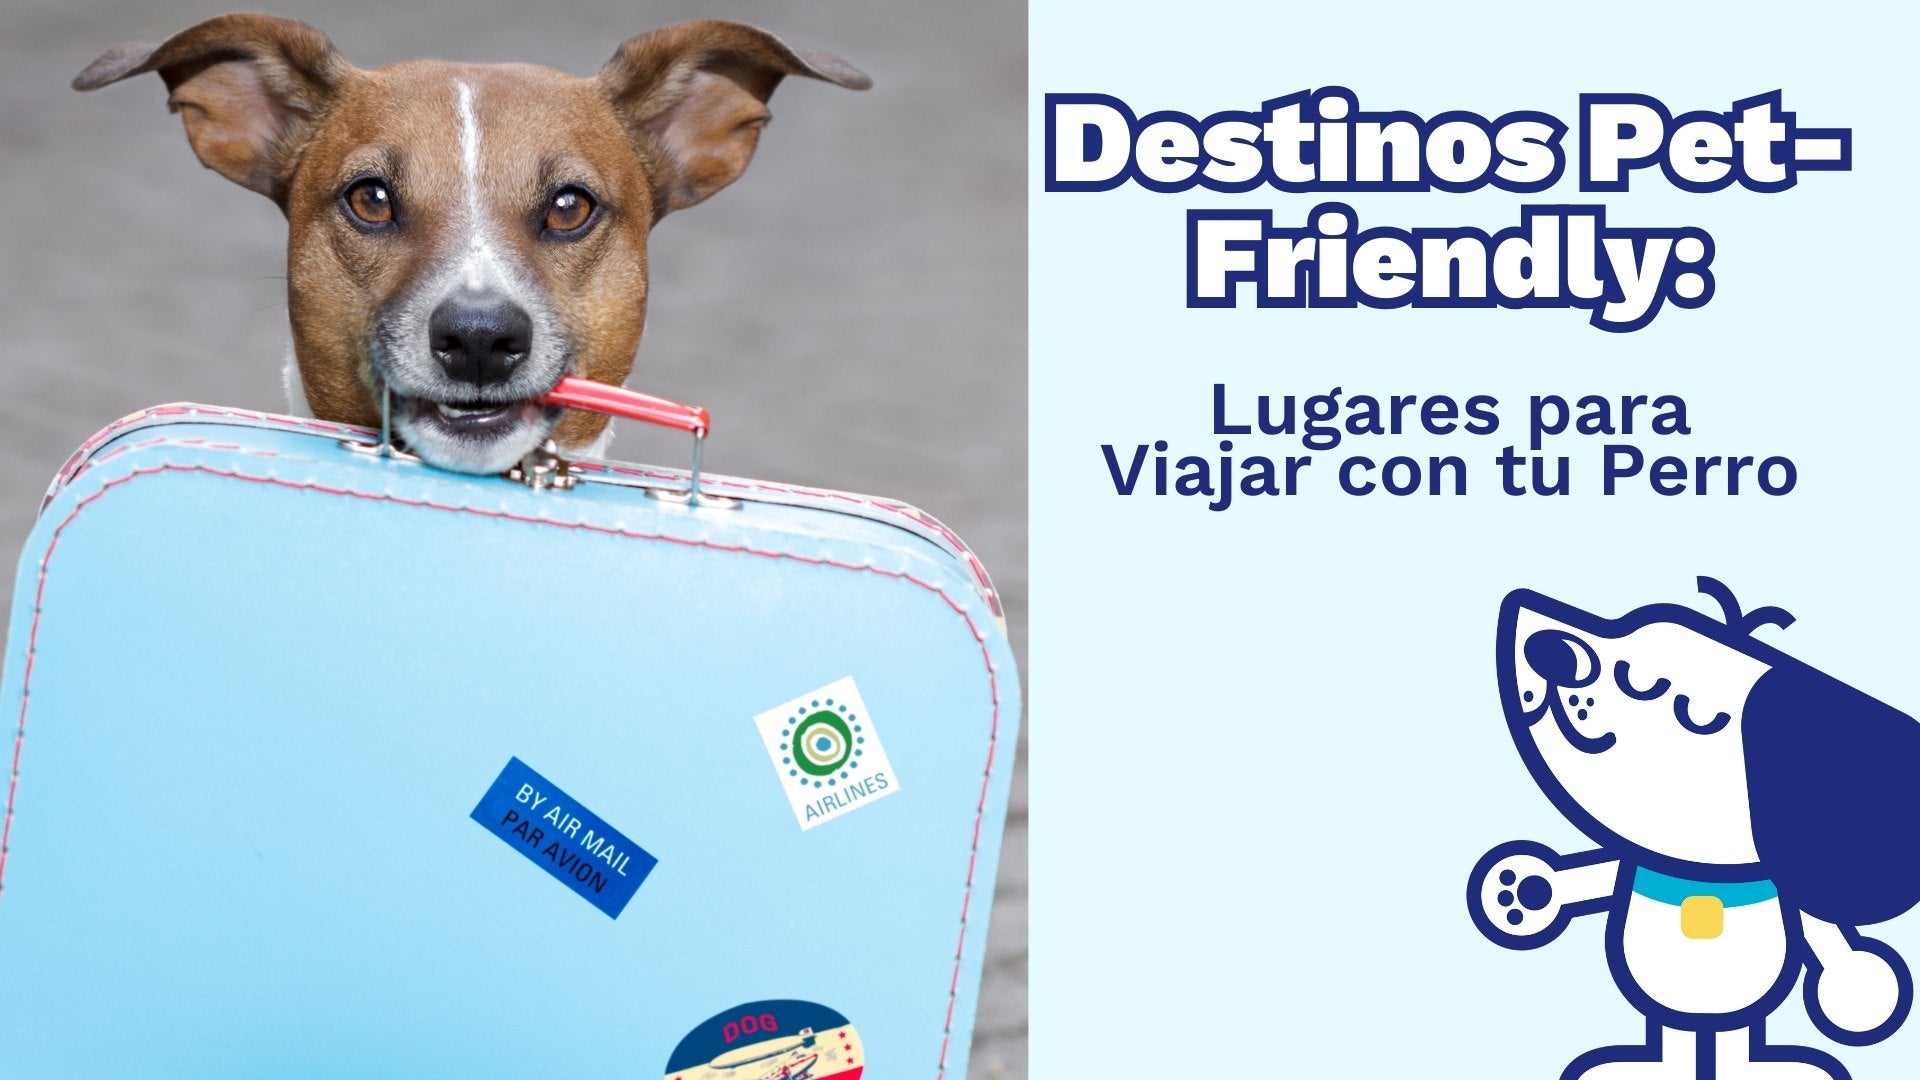 Destinos Pet-Friendly: Lugares para Viajar con tu Perro